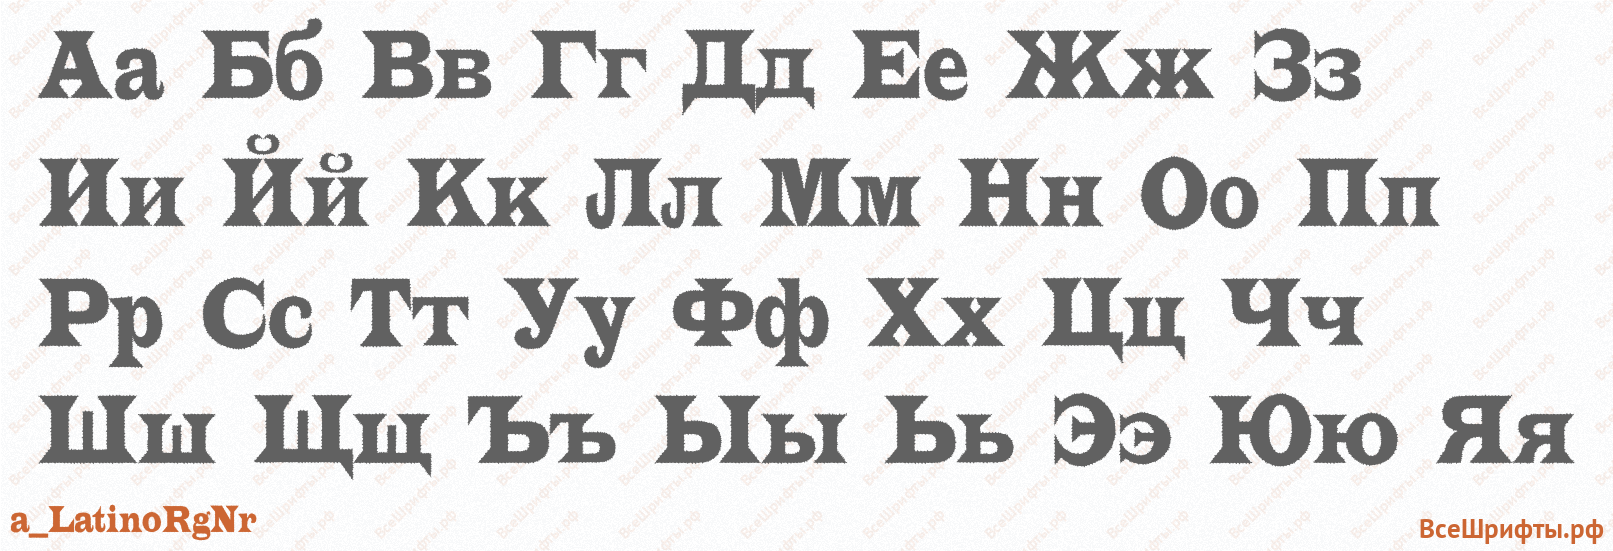 Шрифт a_LatinoRgNr с русскими буквами